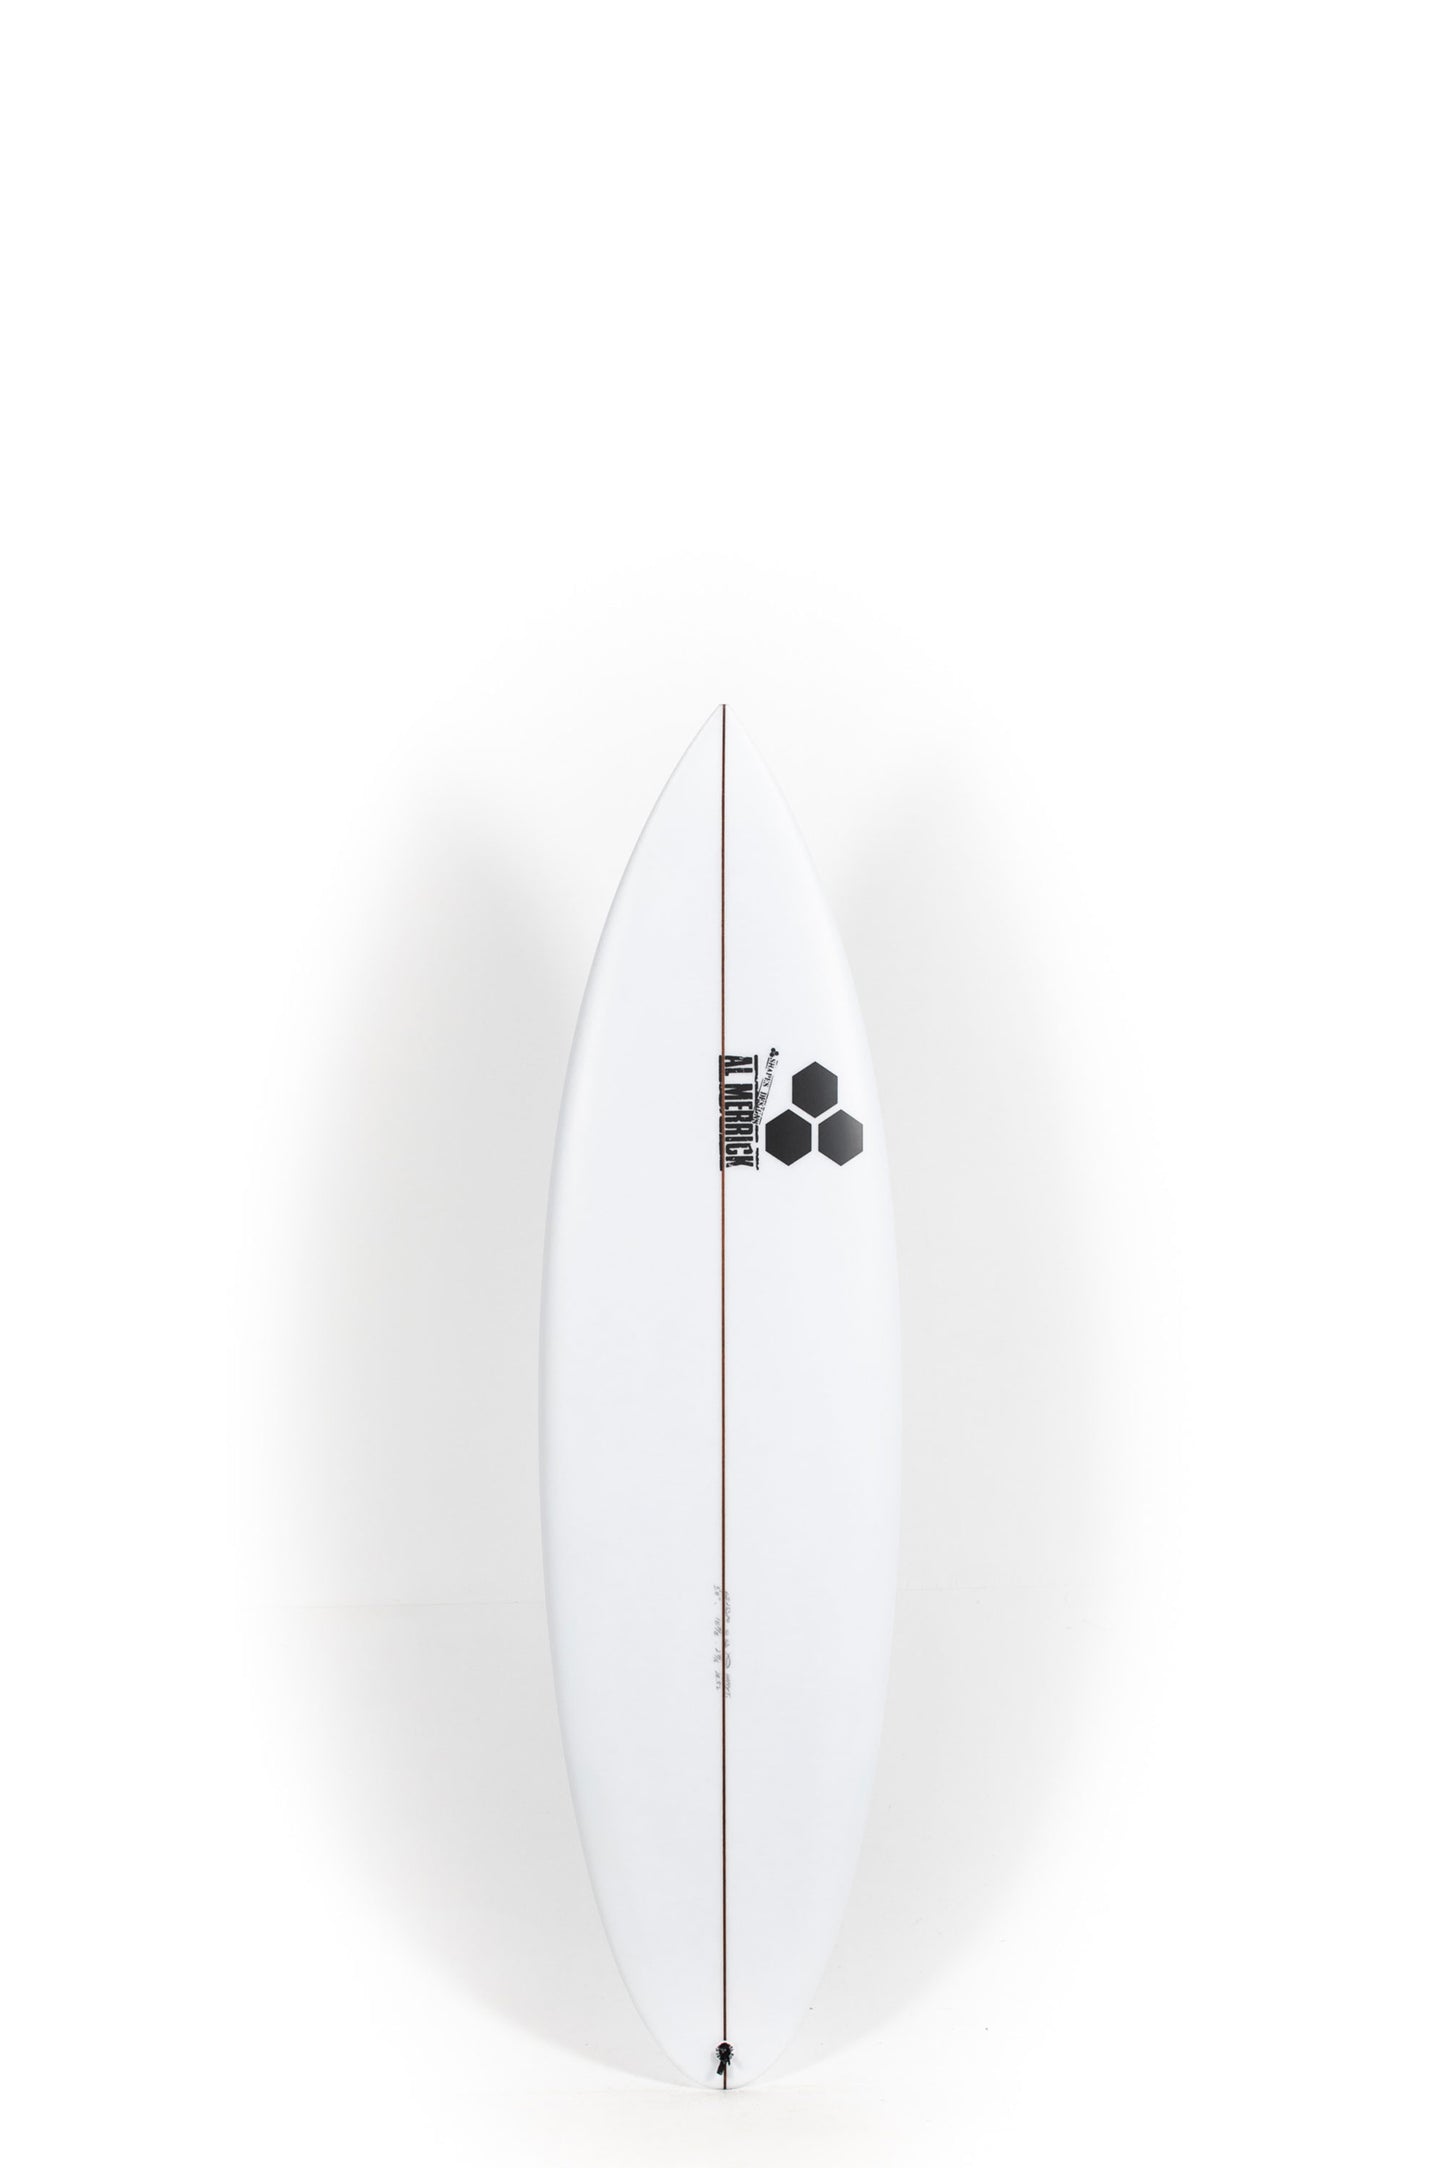 Pukas Surf Shop - Channel Islands - HAPPY TRAVELER by Al Merrick - 5’11” x 18 7/8 x 2 7/16 - 28,58L - CI25370